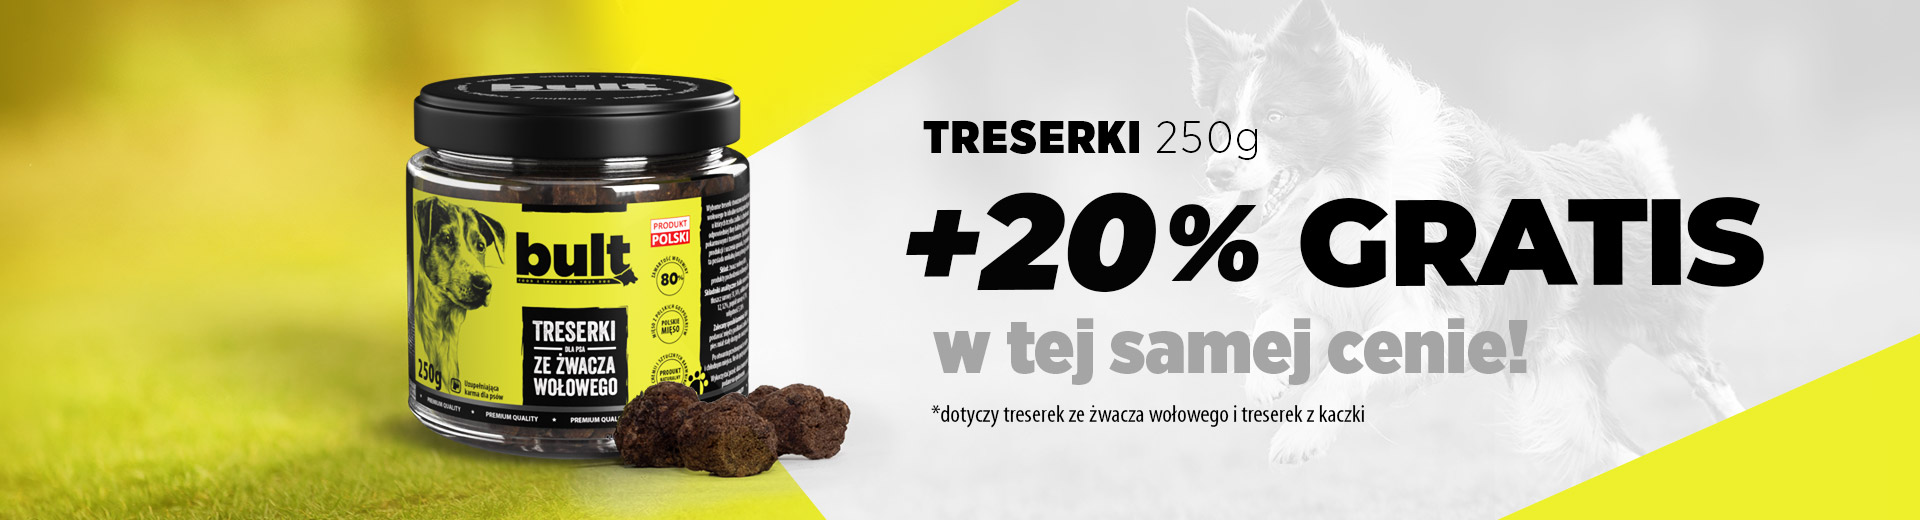 Treserki 250g promocja +20%